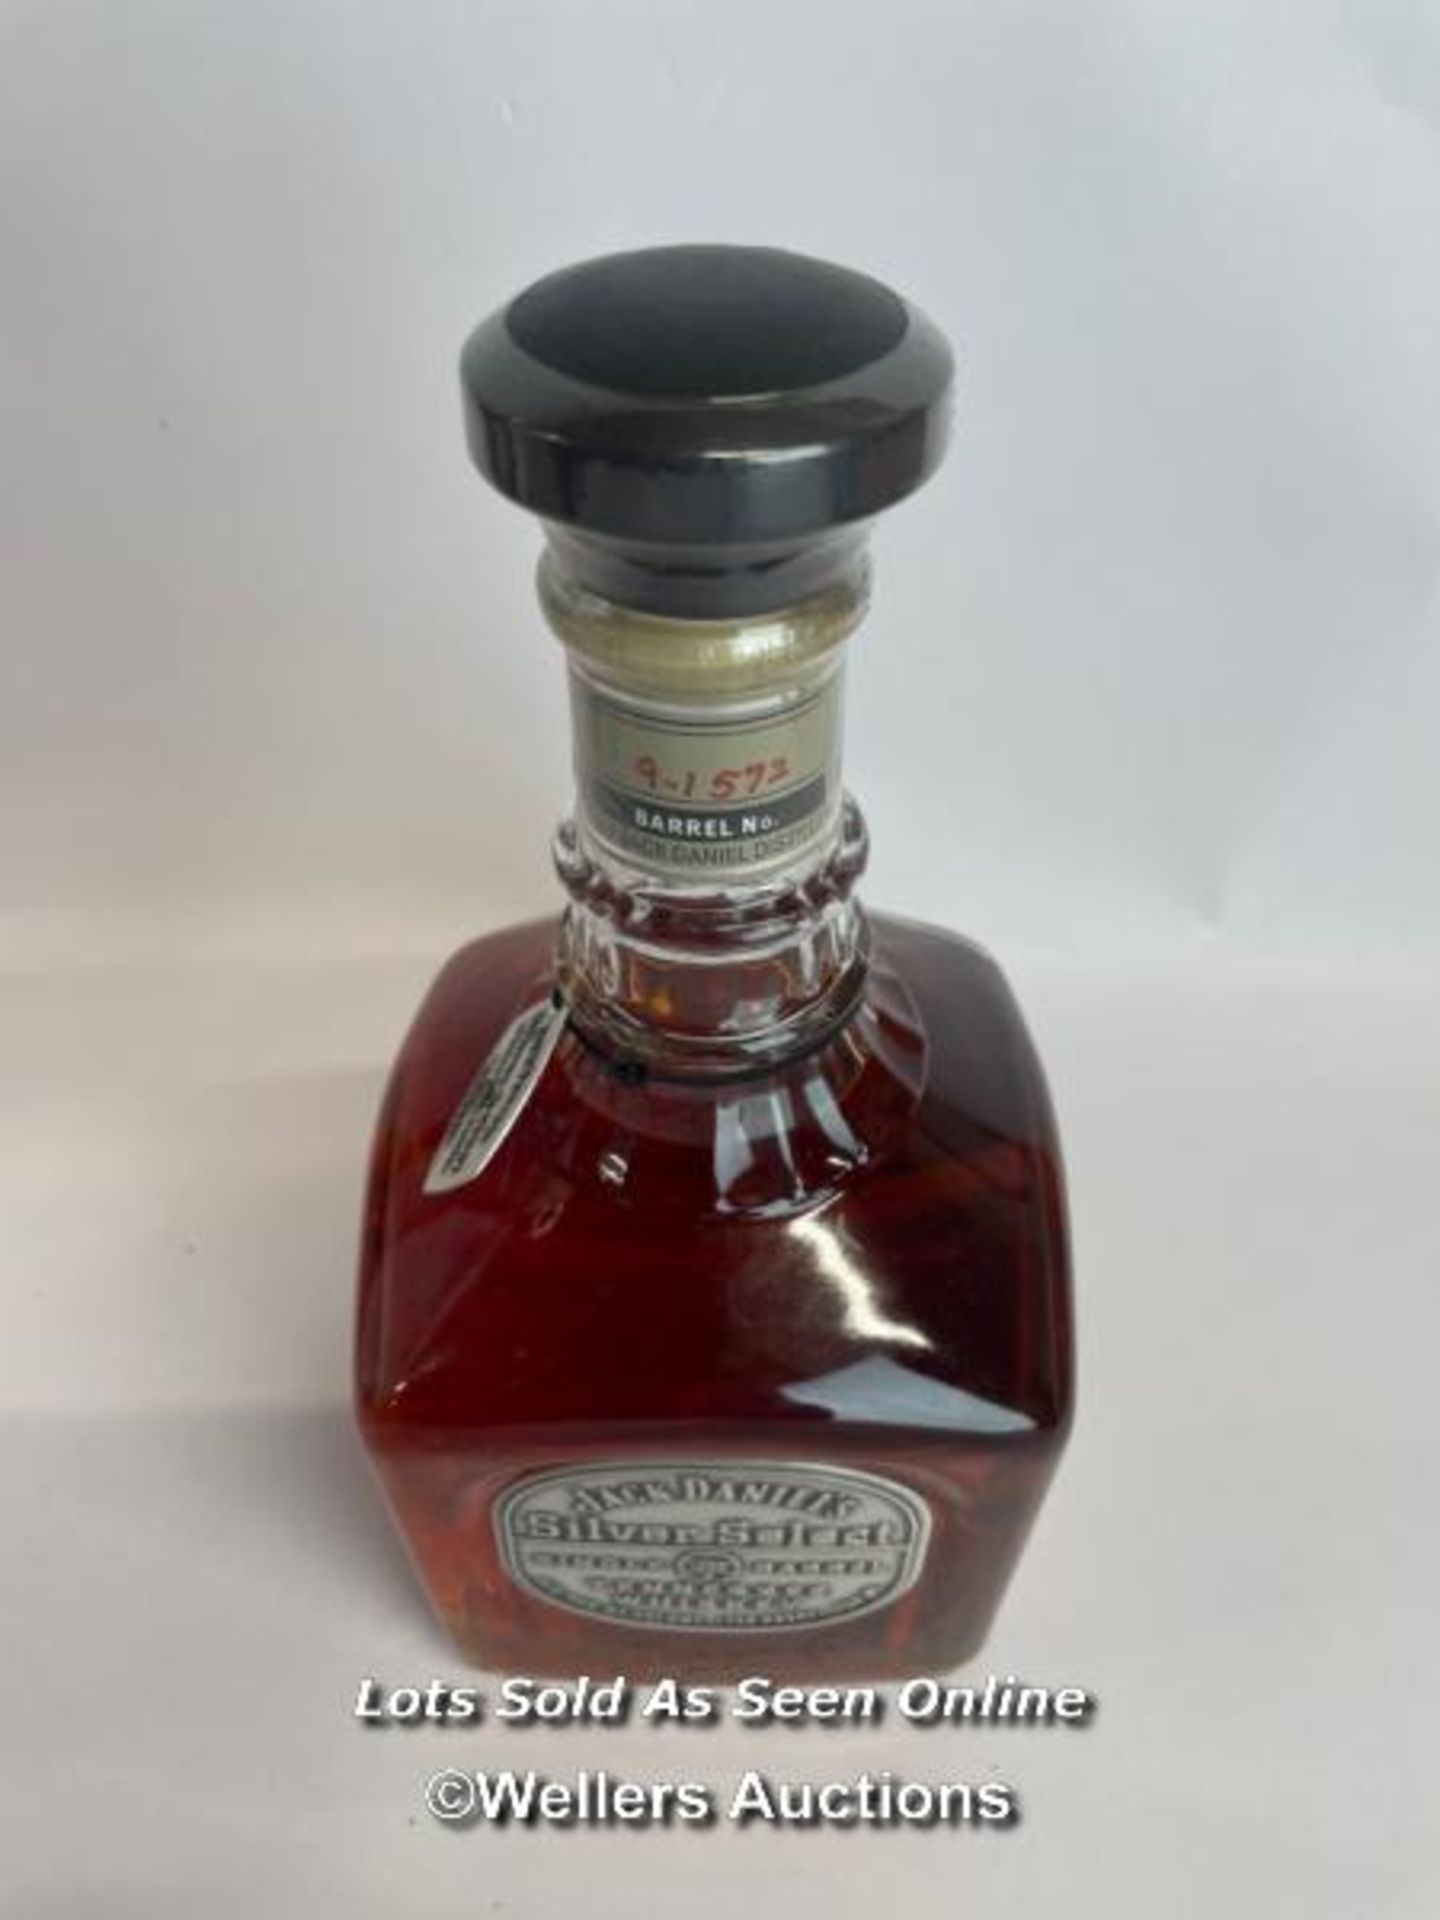 Jack Daniels Silver Select Single Barrel Tennessee Whiskey, Release date: 11-03-99, Barrek no: 9- - Bild 5 aus 8